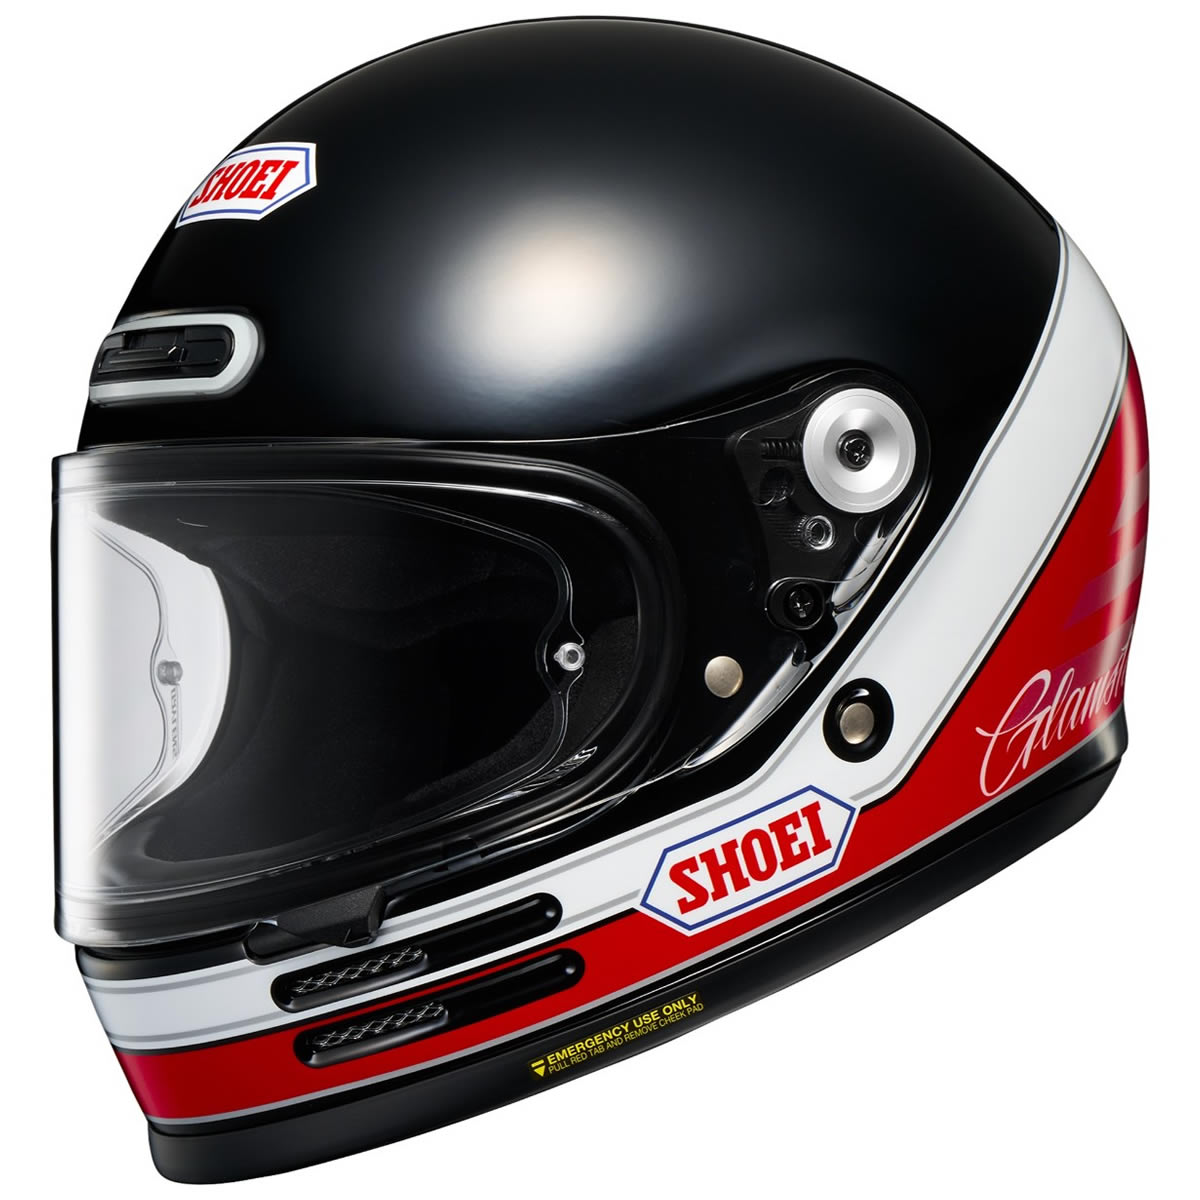 Shoei Glamster06 Abiding TC-1 Helm, schwarz-rot-weiß